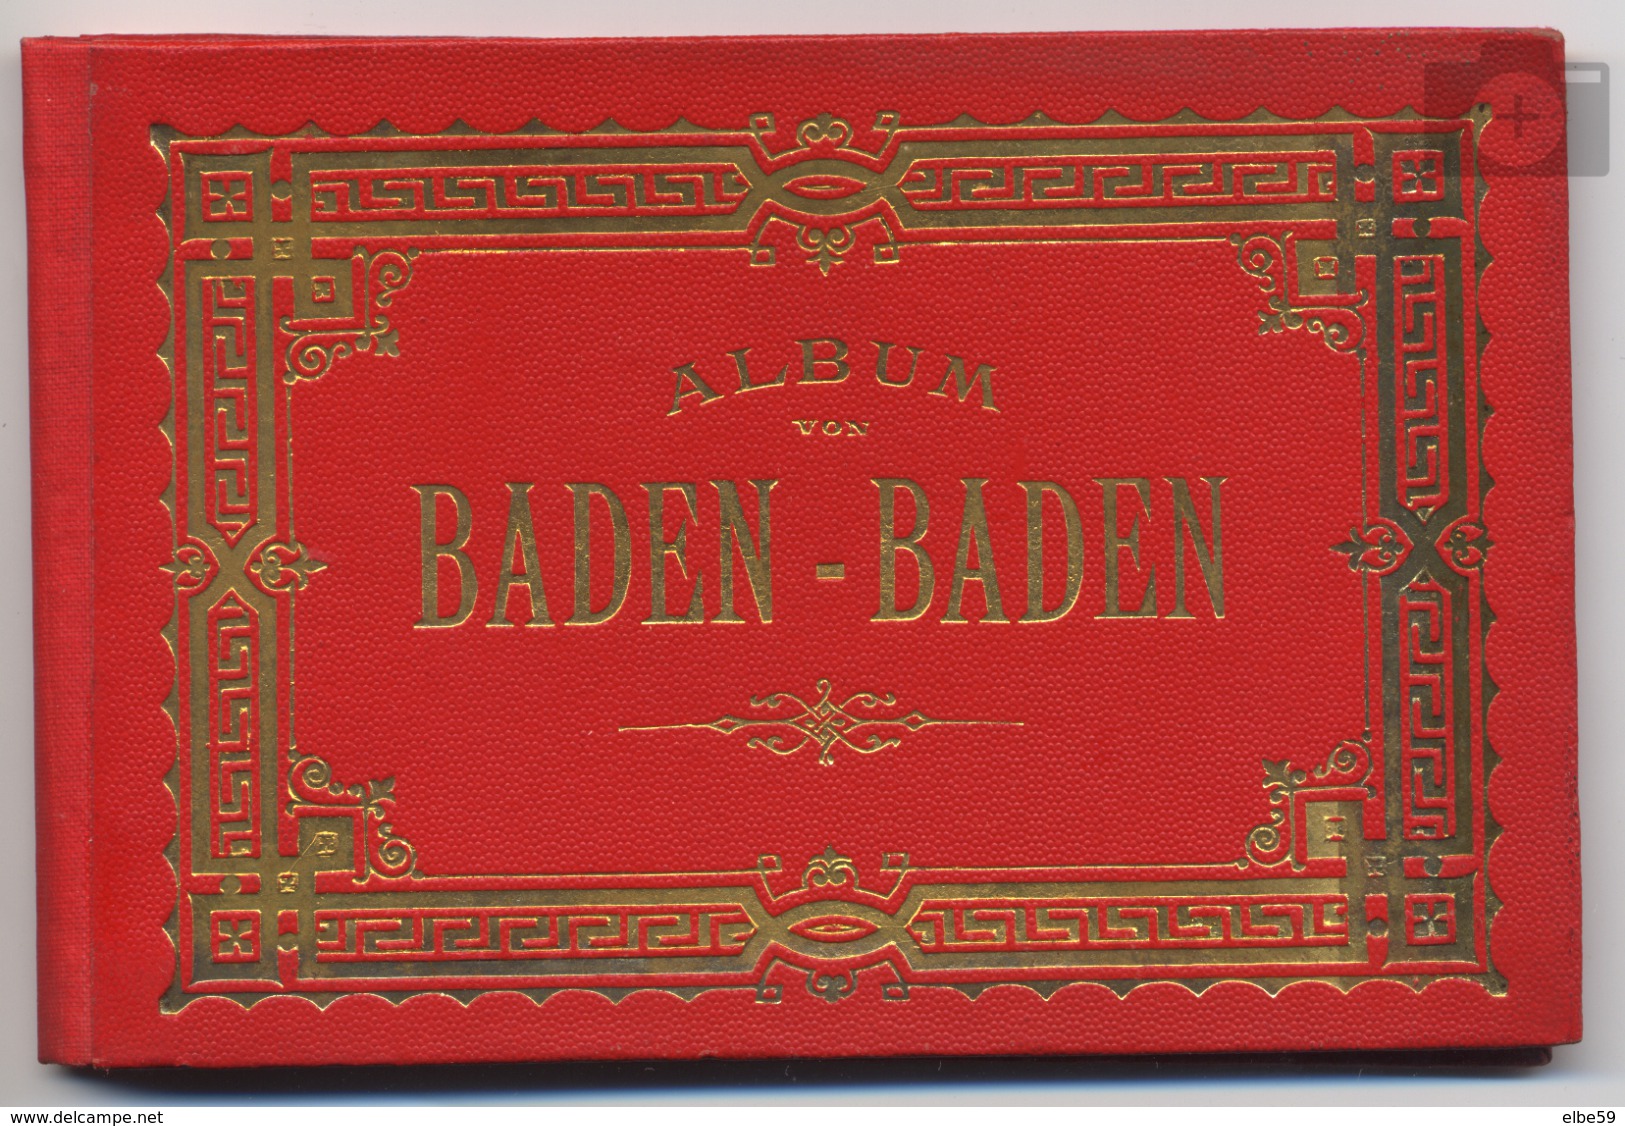 Allemagne, Baden-Württemberg, Album Von Baden-Baden, 18 Photos En Accordéon, Leporello, 1902 - Baden-Baden